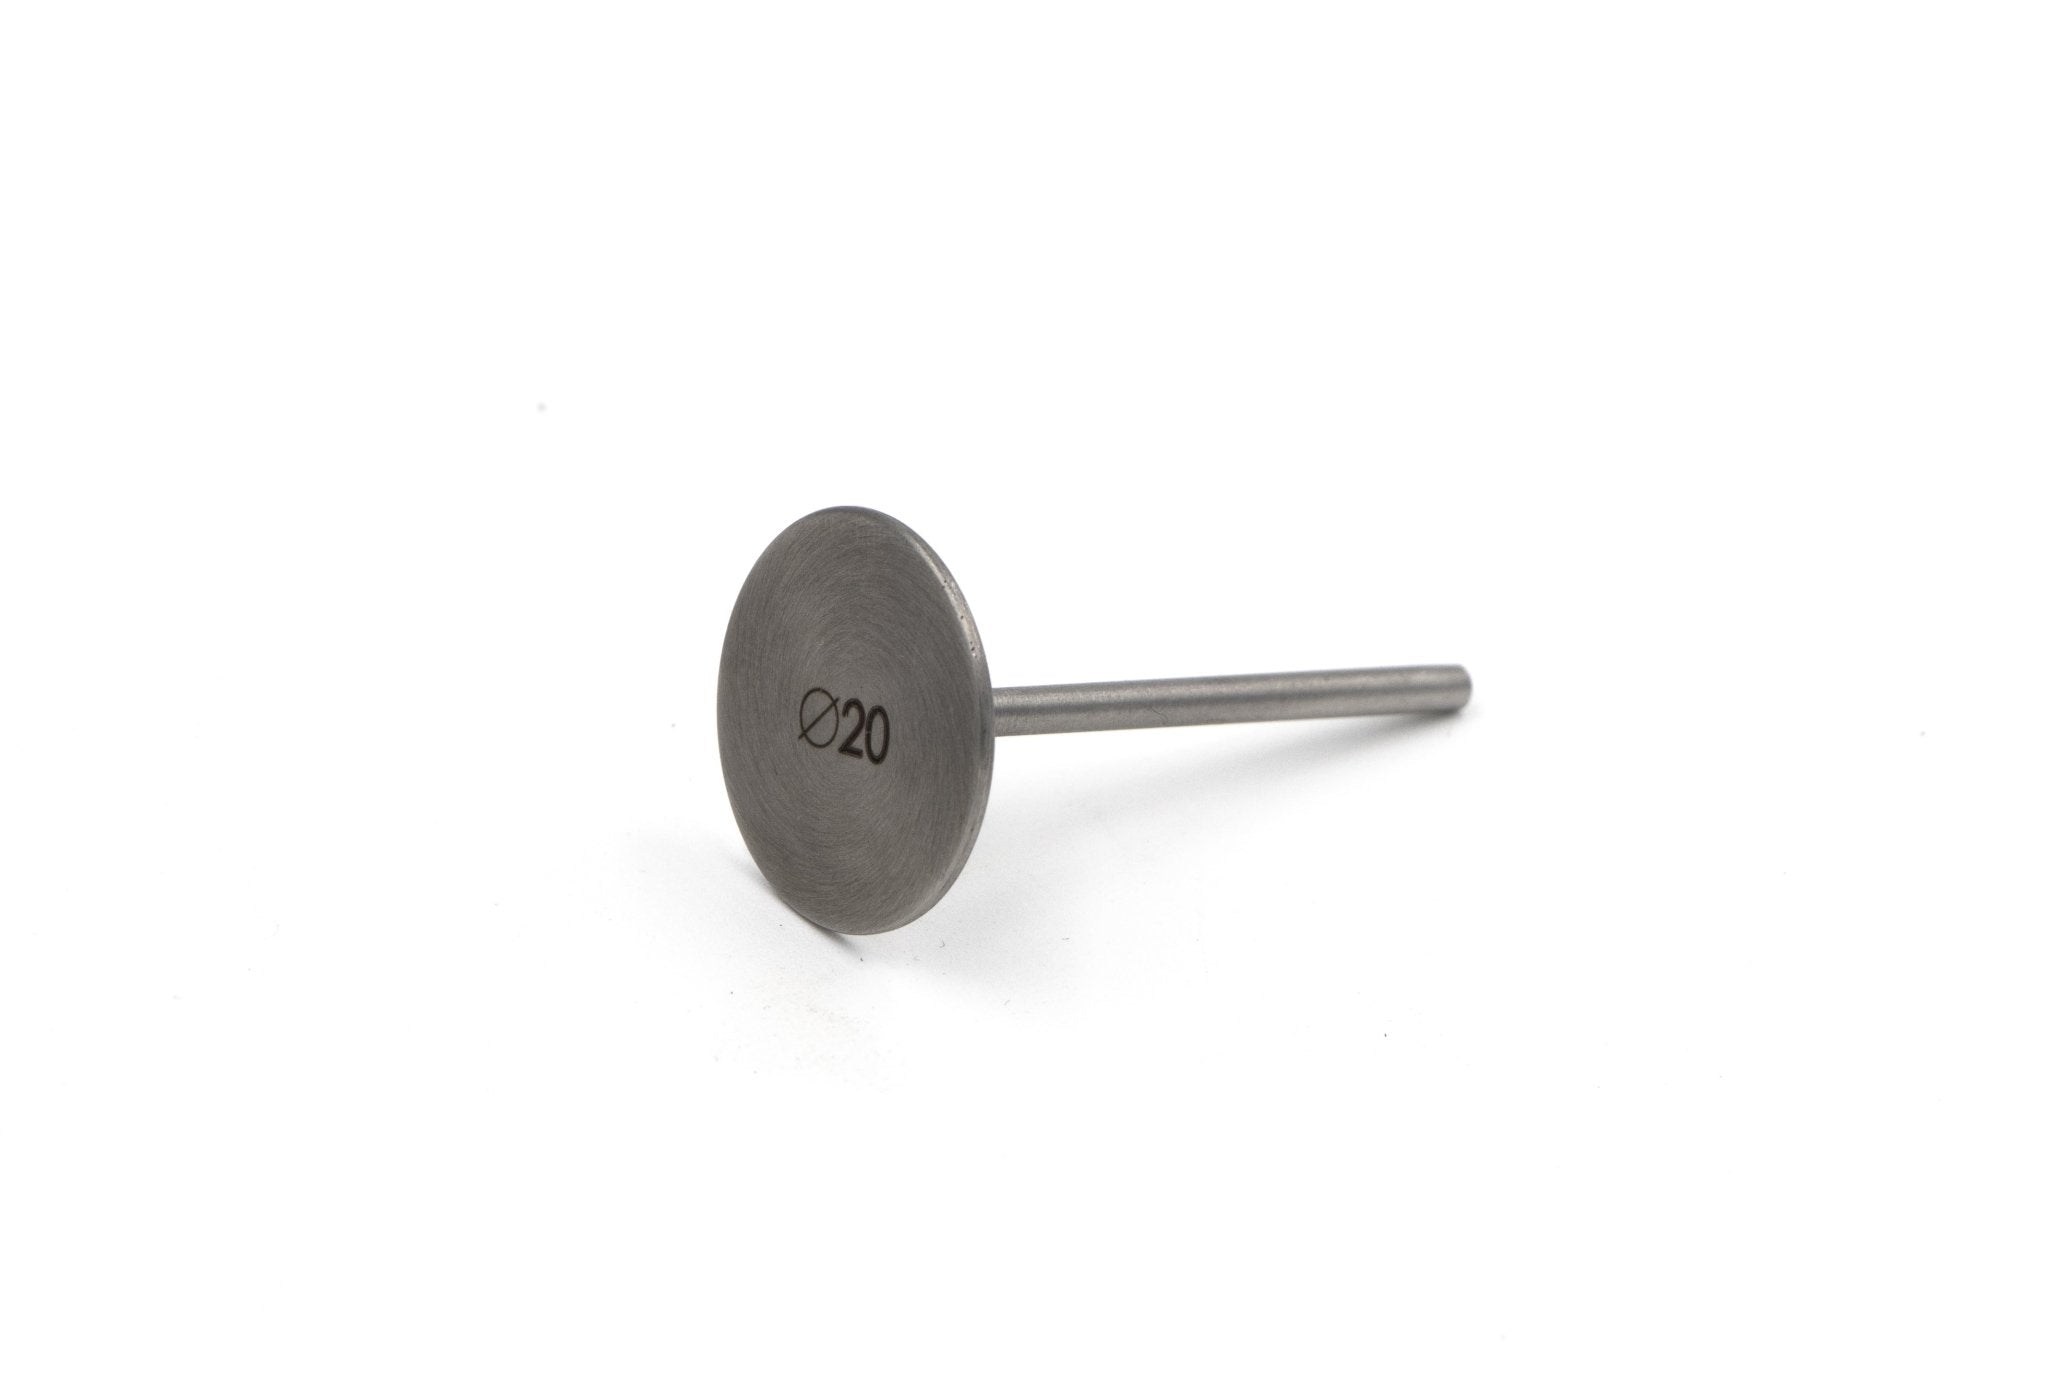 Podo-Disk Regular 20 mm - U-tools